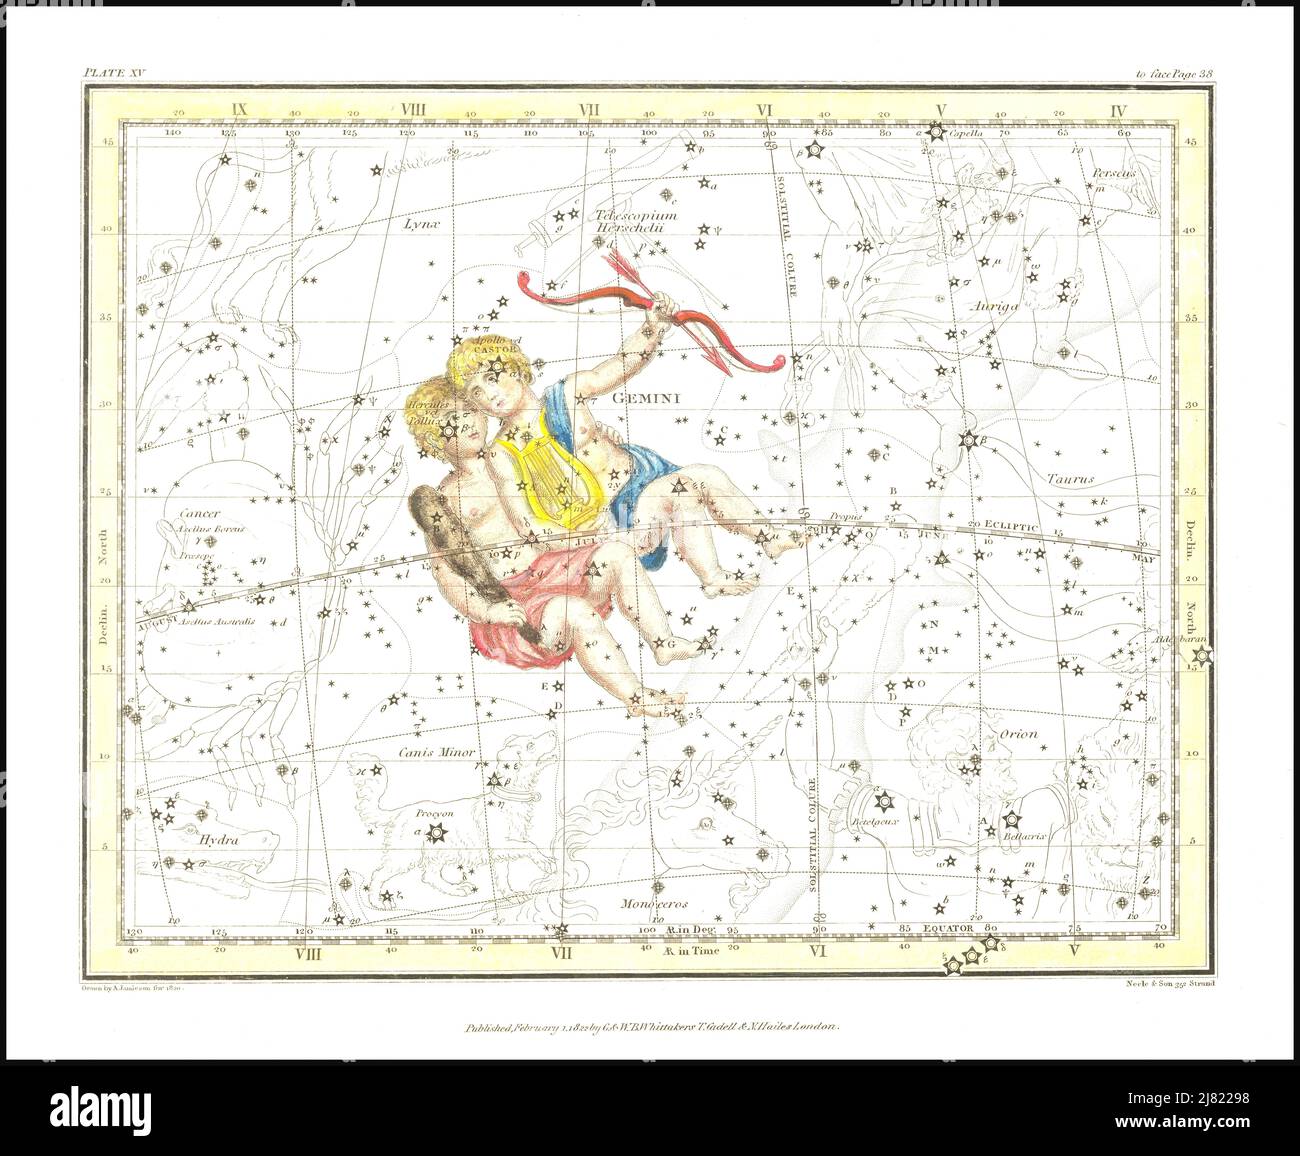 Alexander Jamieson - Gemini Twins - planche 15 d'Un atlas céleste comprenant une exposition systématique des cieux - 1822 Banque D'Images